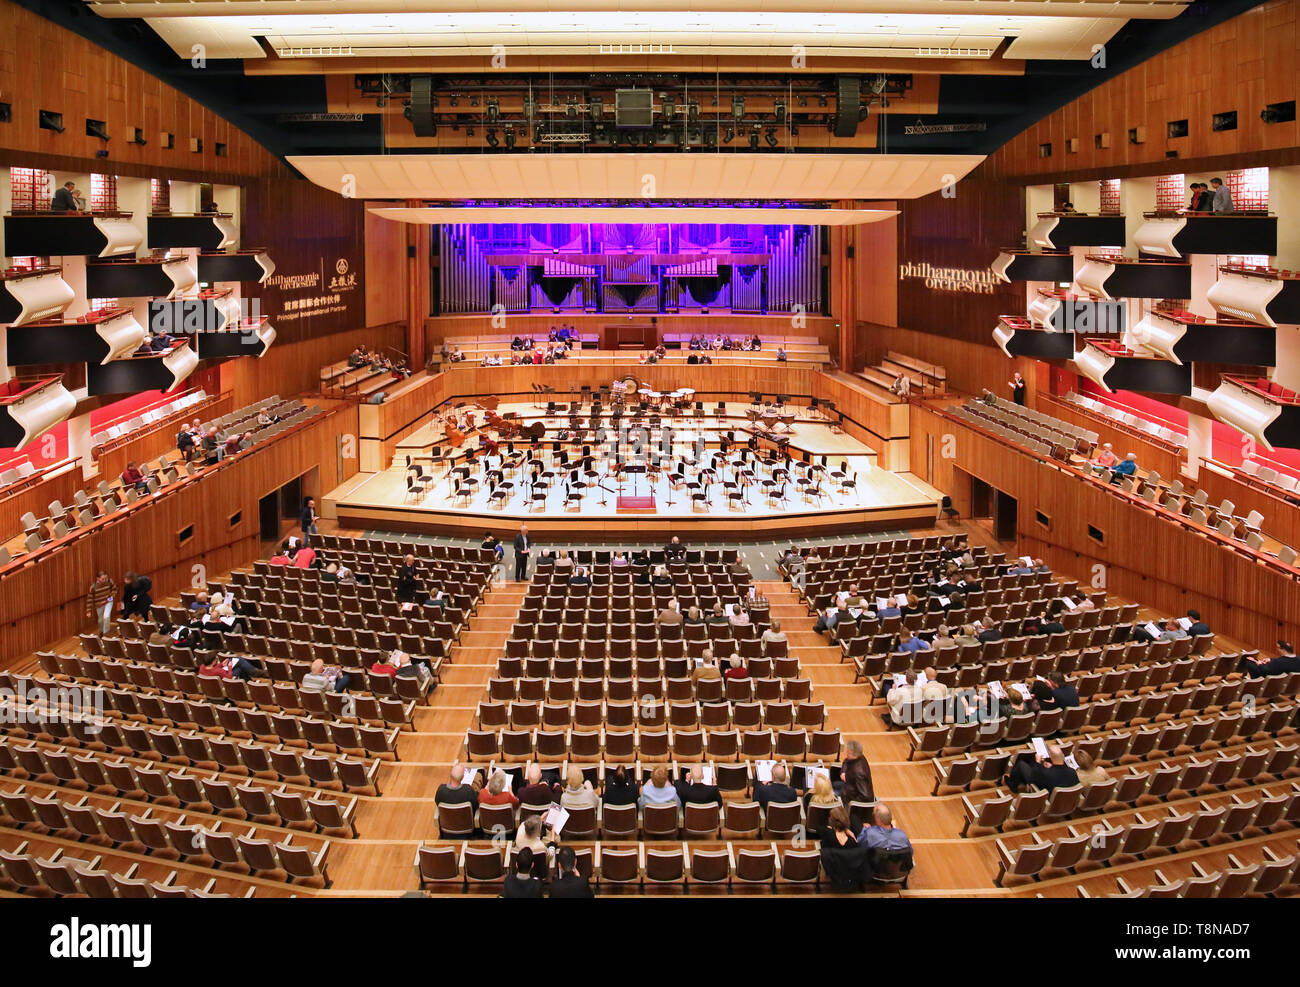 Interior del Royal Festival Hall de Londres, South Bank (inaugurado en 1951. Escenario preparado para orquesta, entrando en la audiencia para un concierto de música clásica. Foto de stock